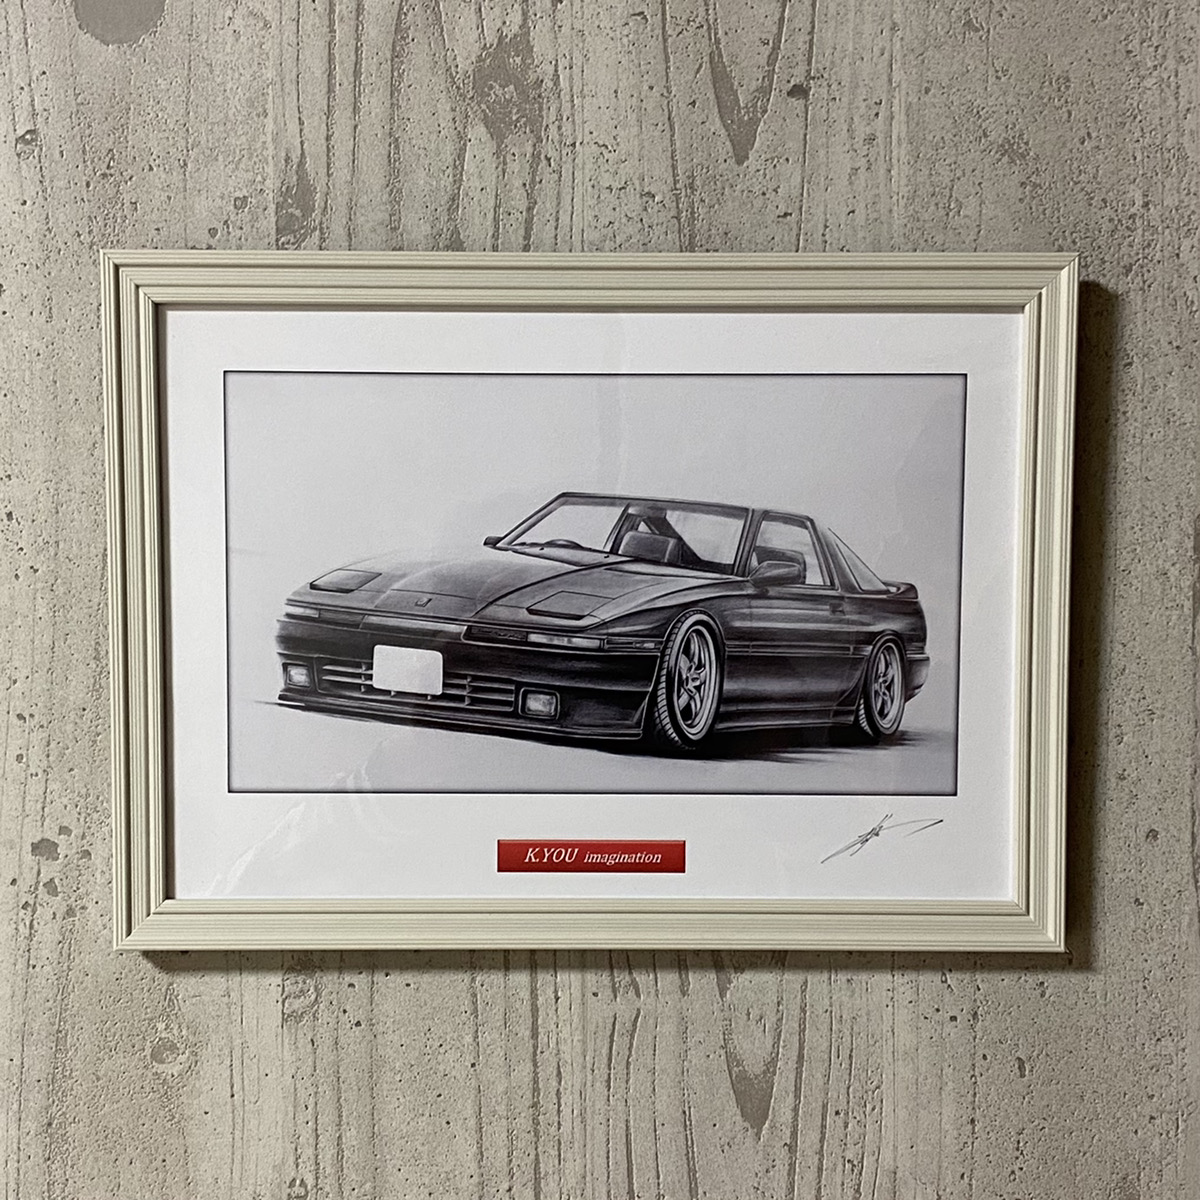 市場 Toyota 絵画 ノスタルジックカー 絵 名車 鉛筆画 0 230ｍｍx318ｍｍ デッサン トヨタ サイズ イラスト 旧車 スープラ